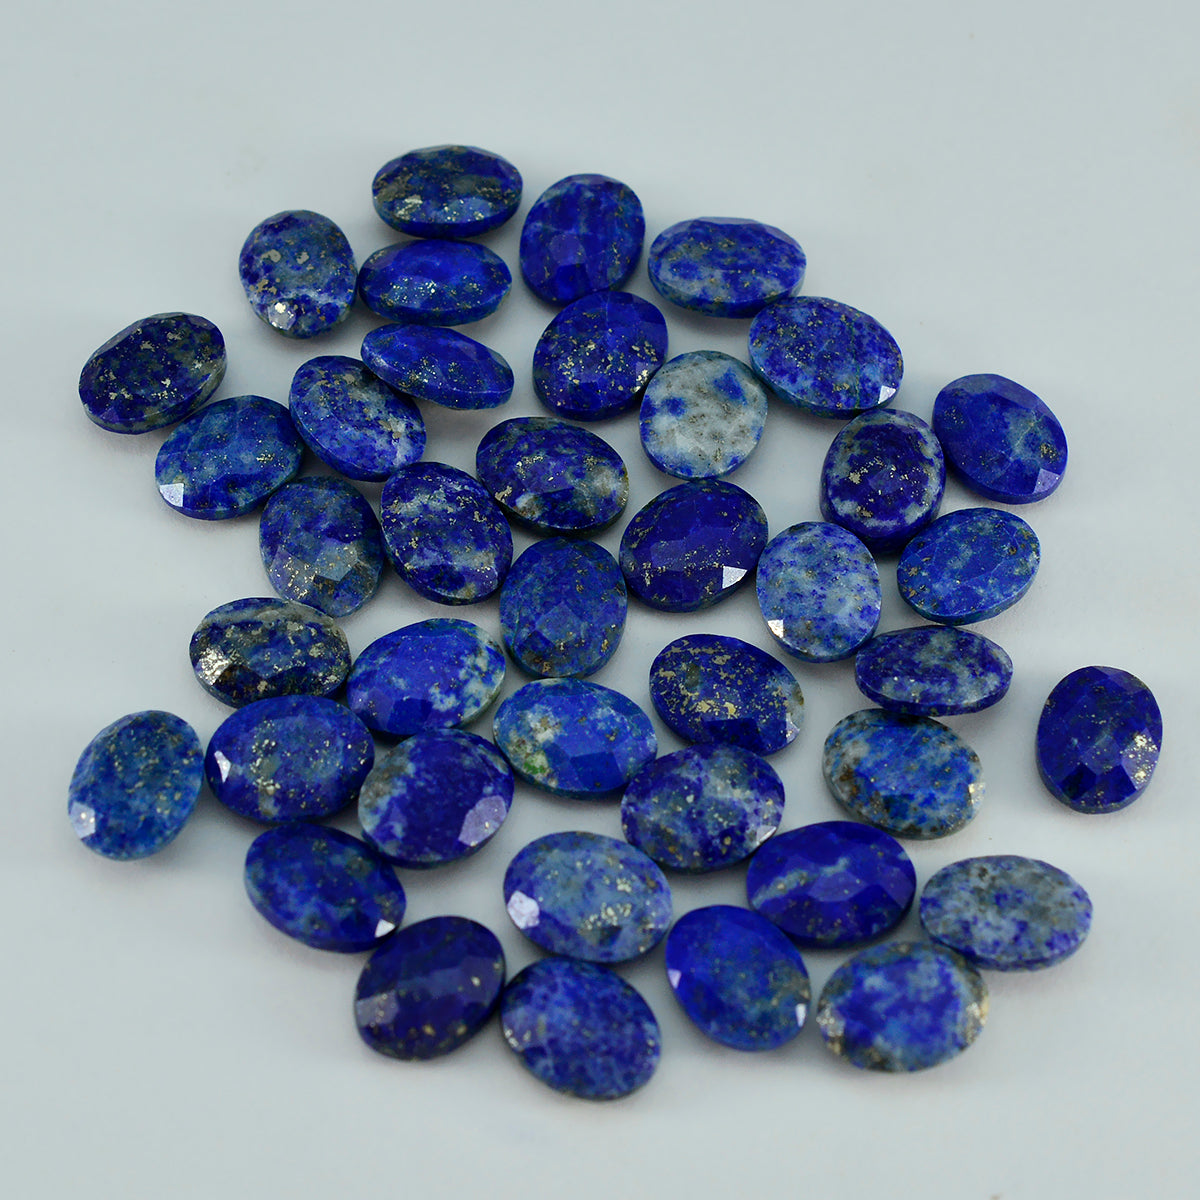 riyogems 1 шт. натуральный синий лазурит ограненный 7x9 мм овальной формы красивый качественный драгоценный камень